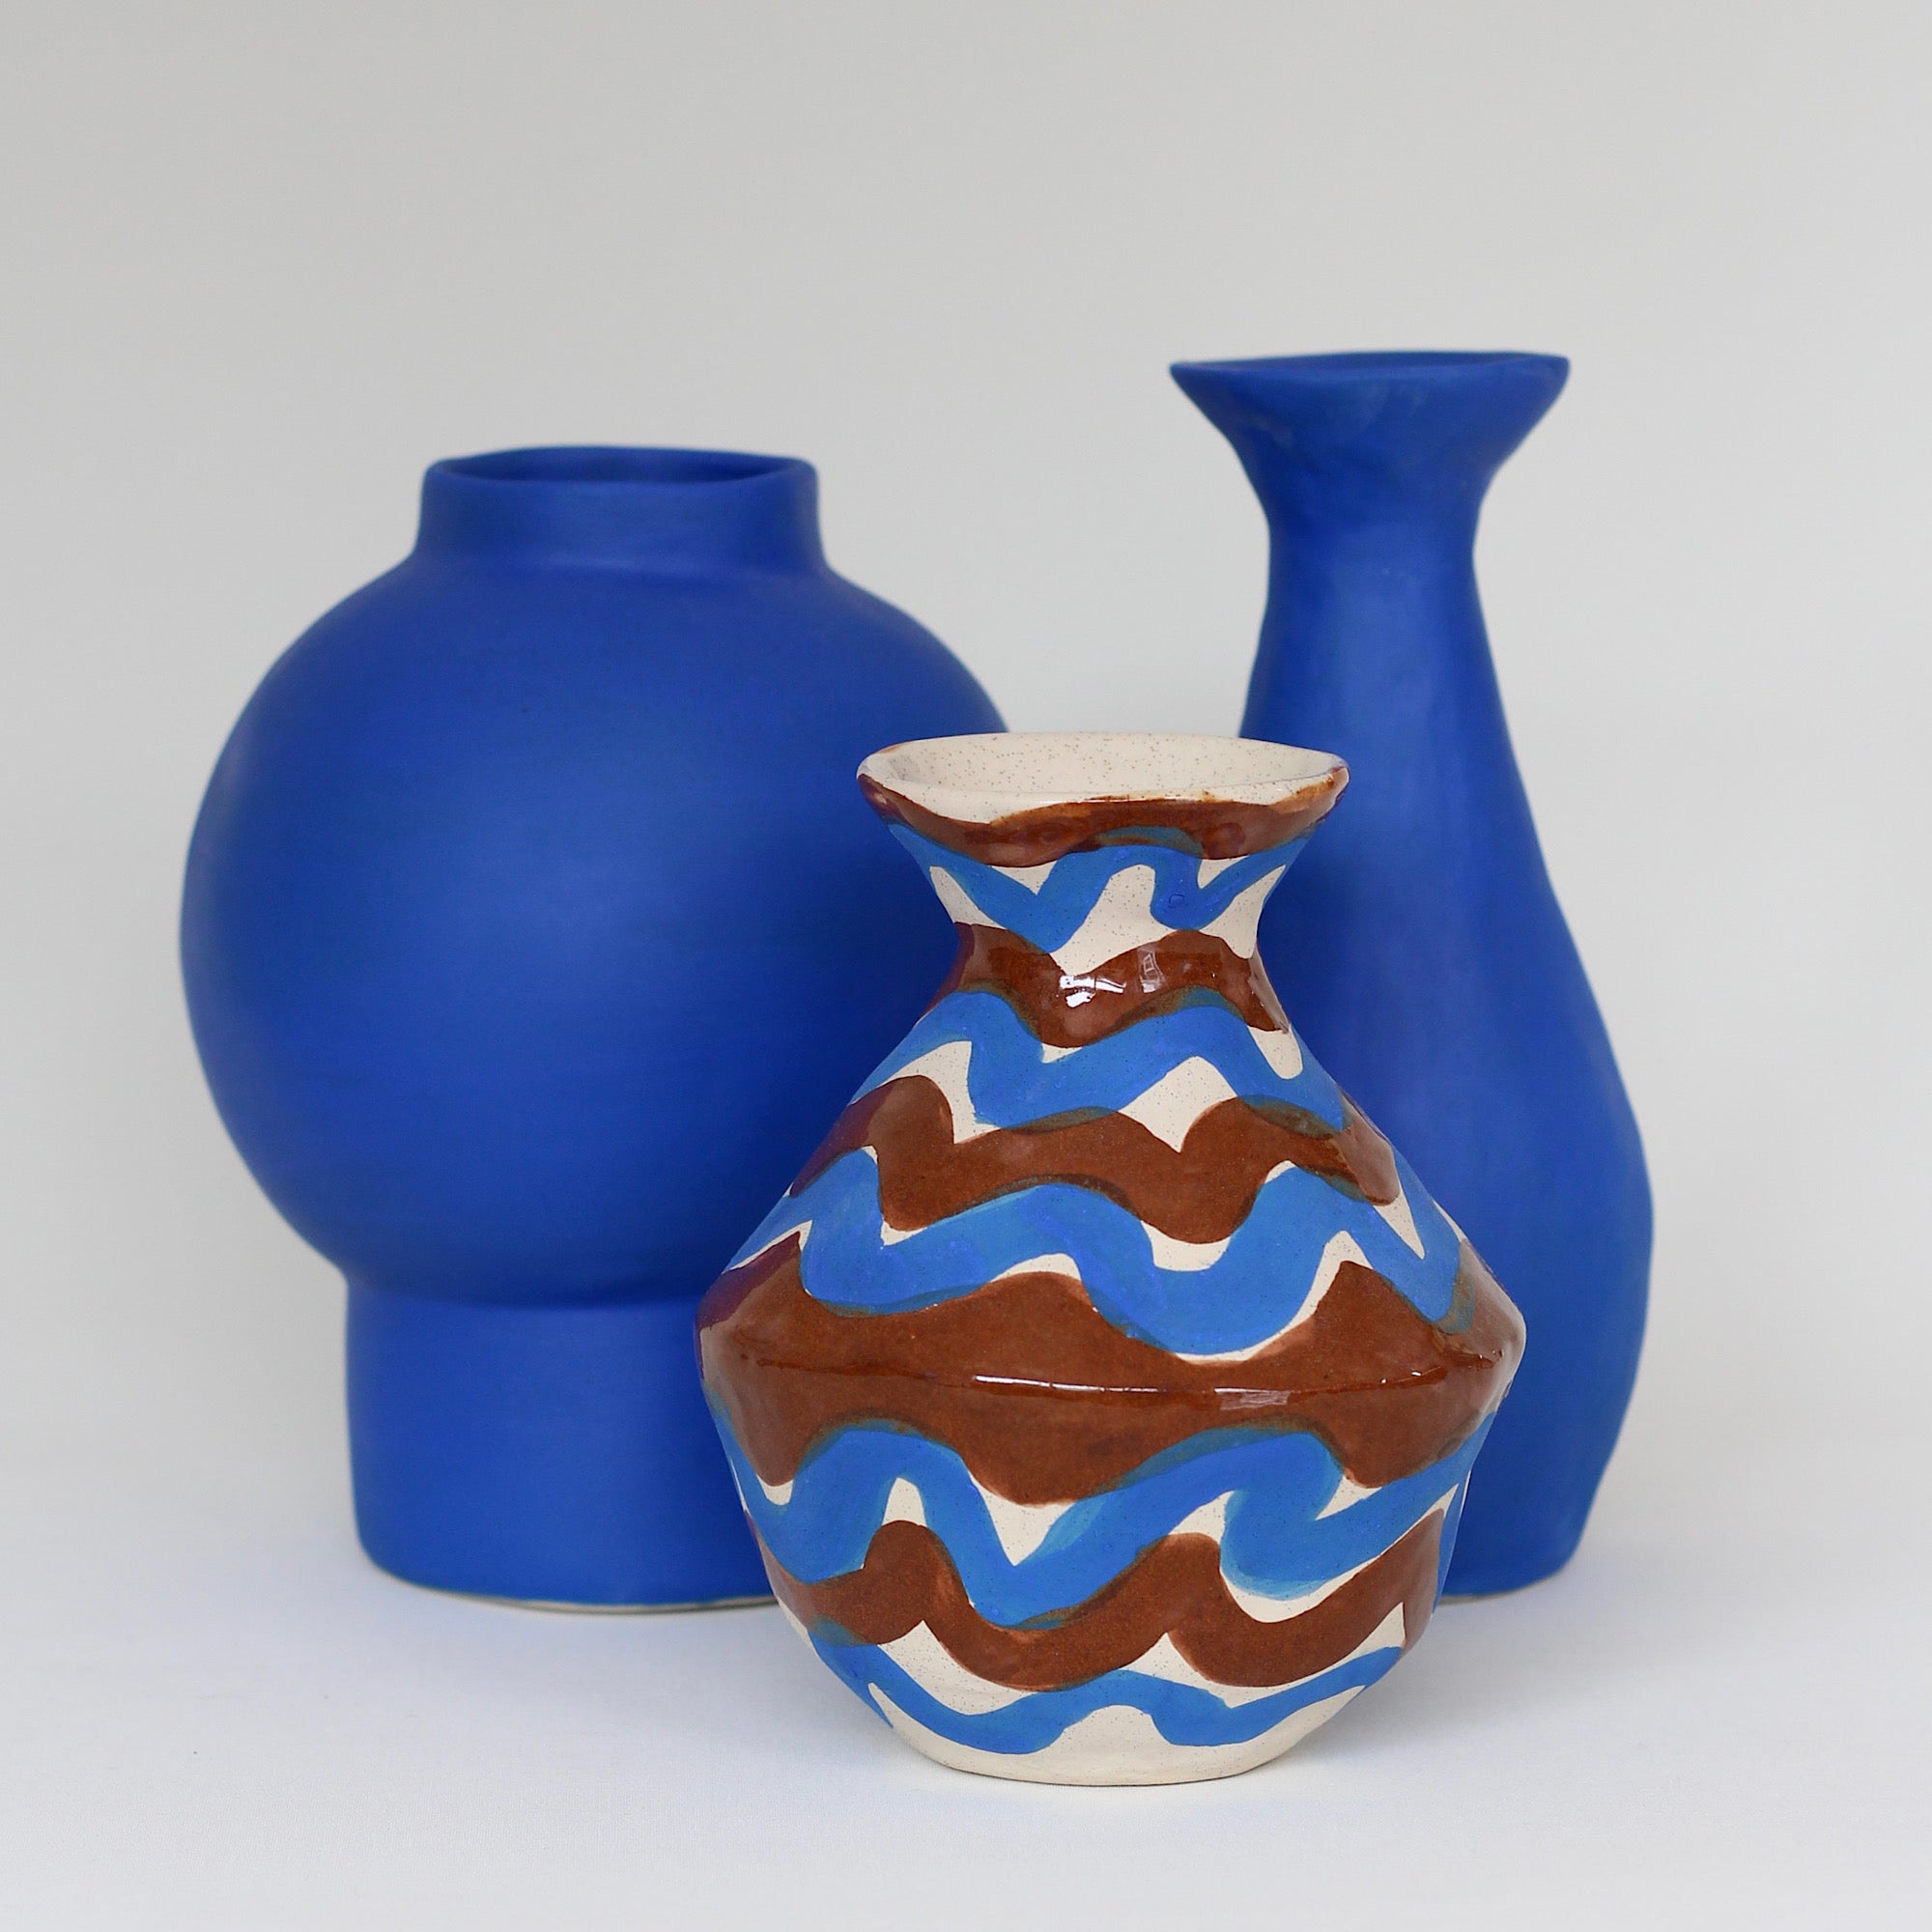 Orb Vase, Matte Cobalt